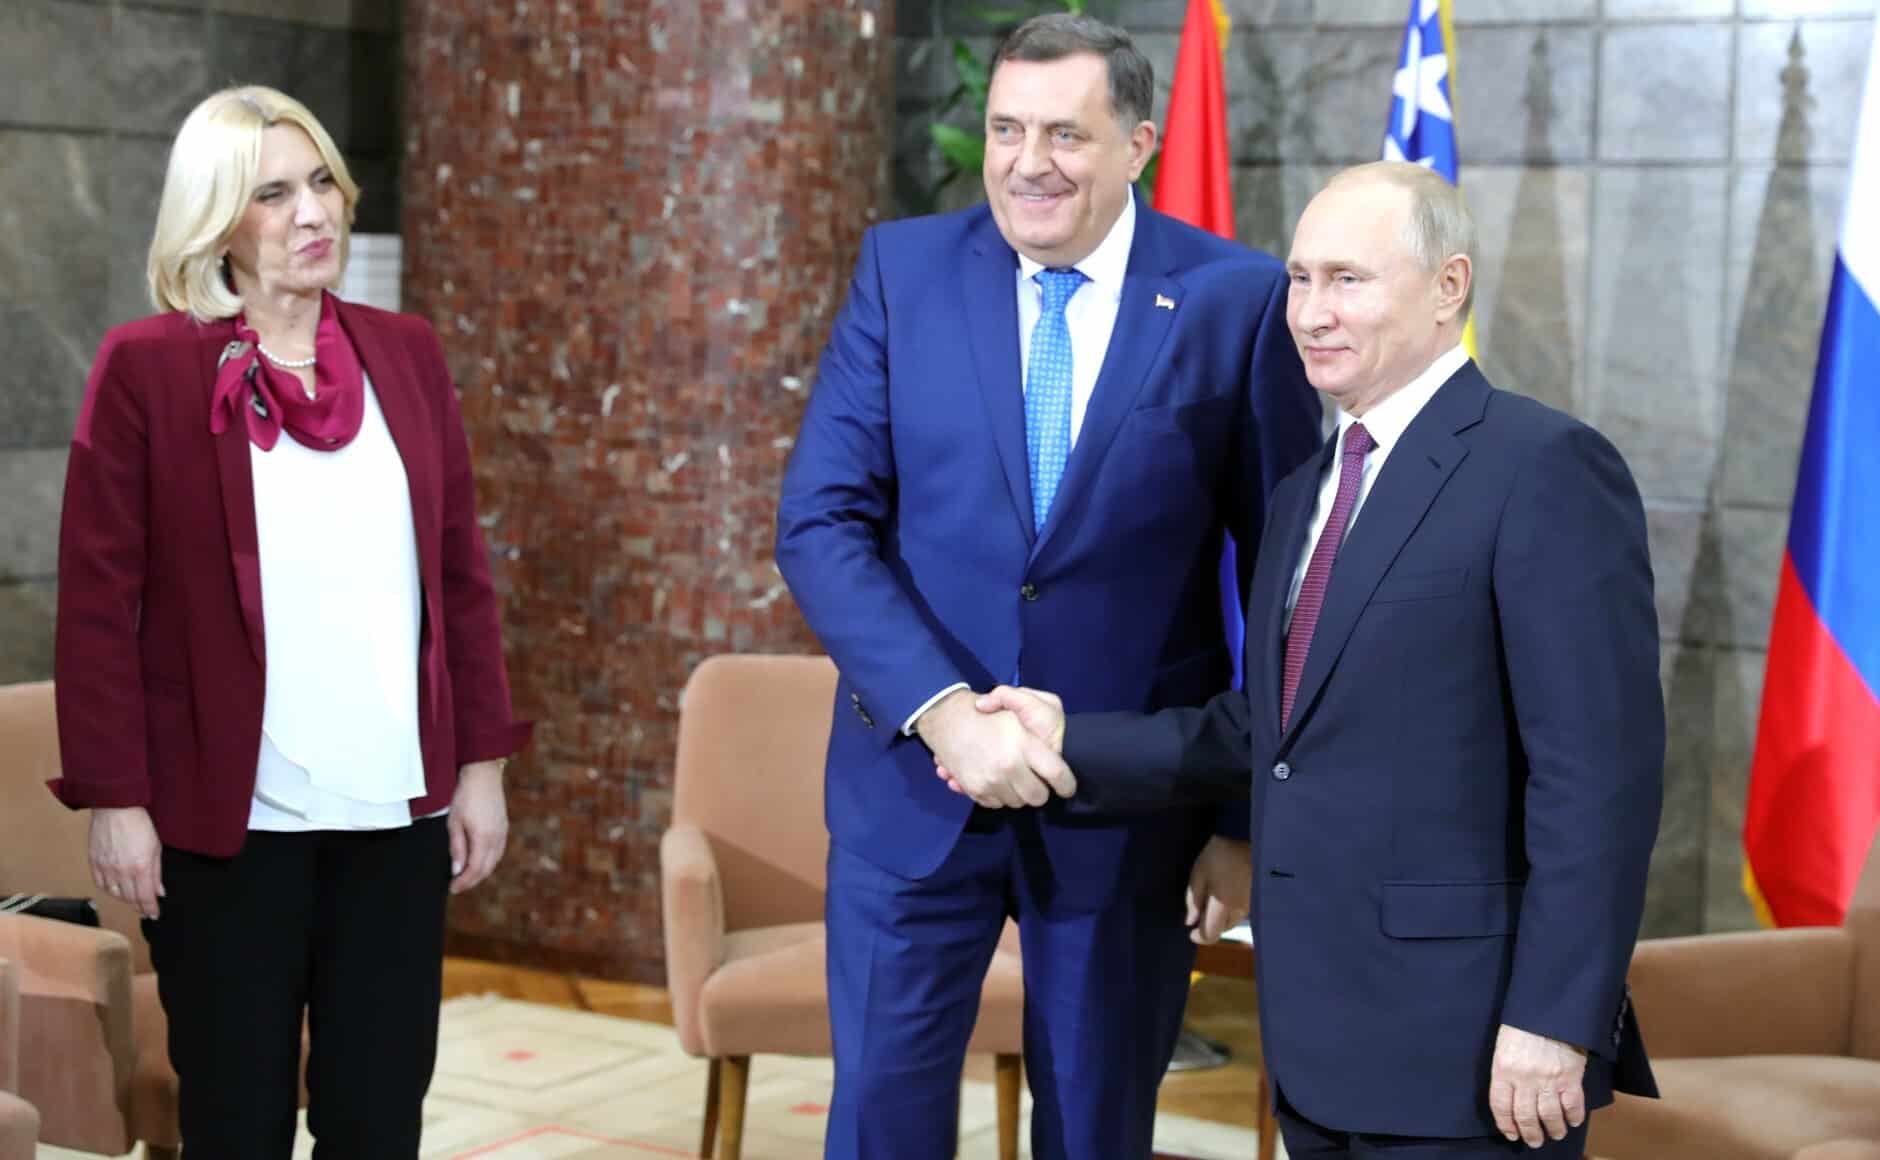 Zeljka Cvijanovic, Milorad Dodik y Vladimir Putin, en una imagen de archivo en 2019.